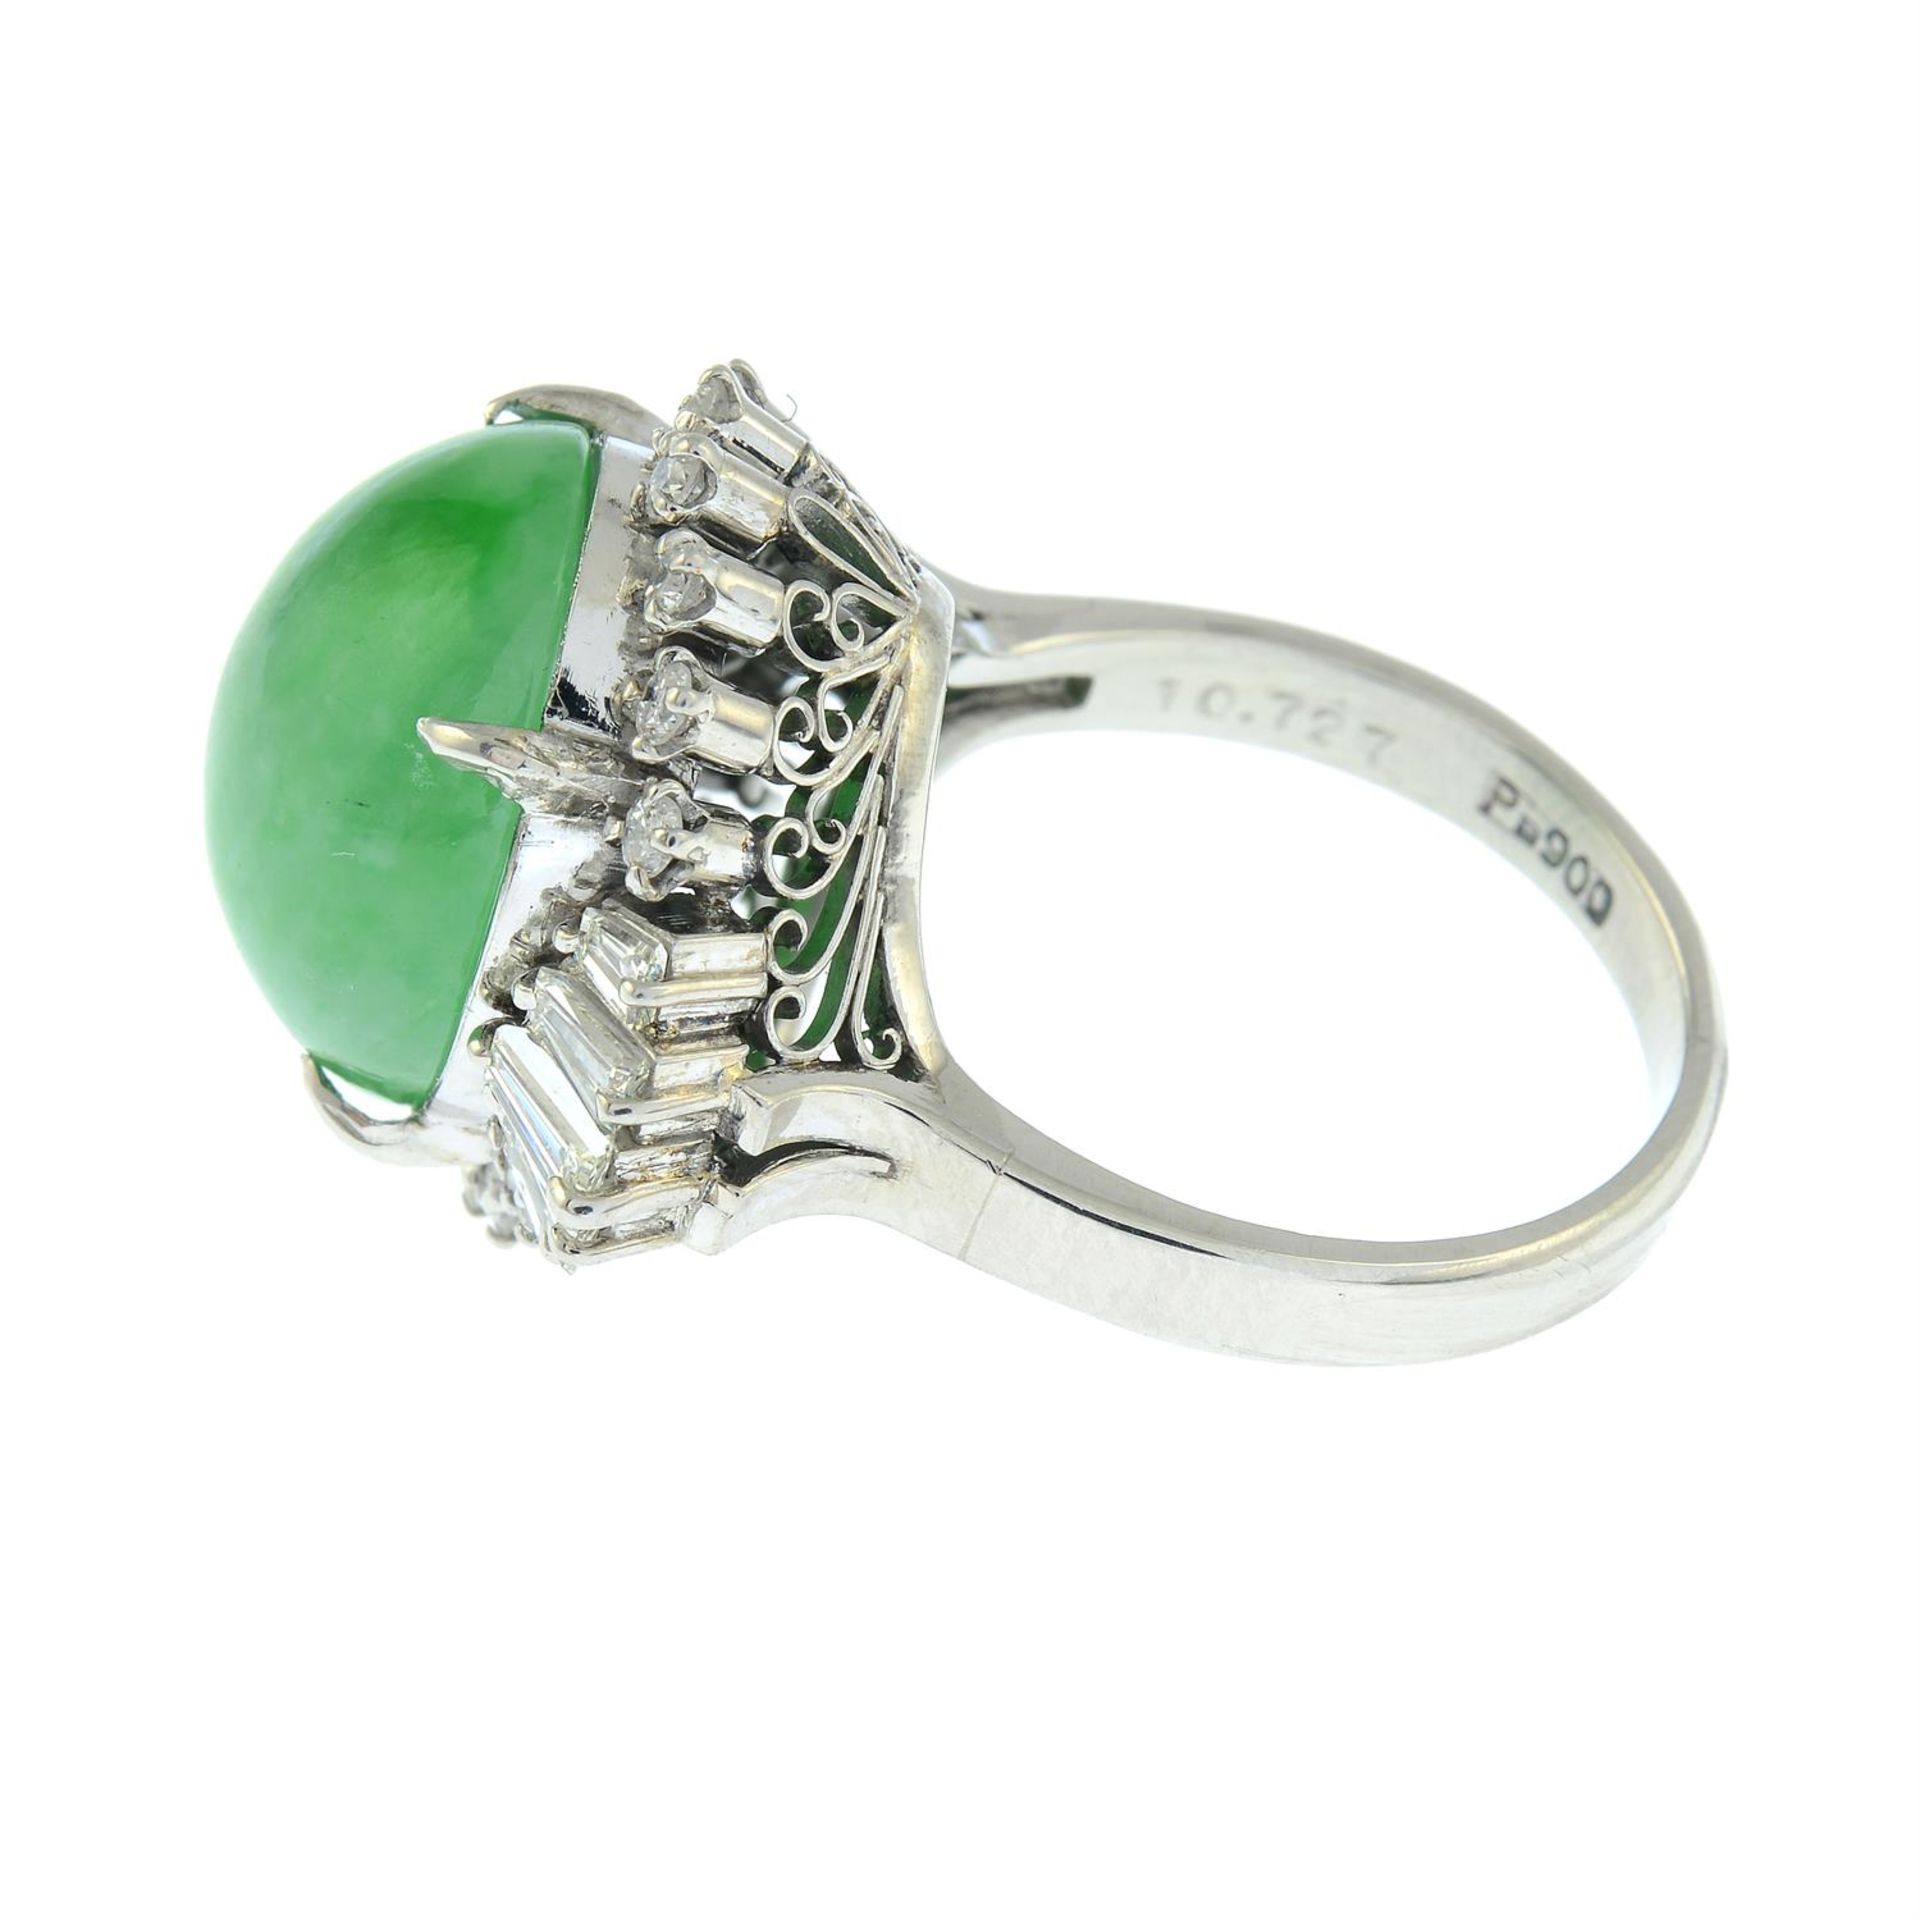 A jadeite jade and vari-cut diamond dress ring. - Image 3 of 5